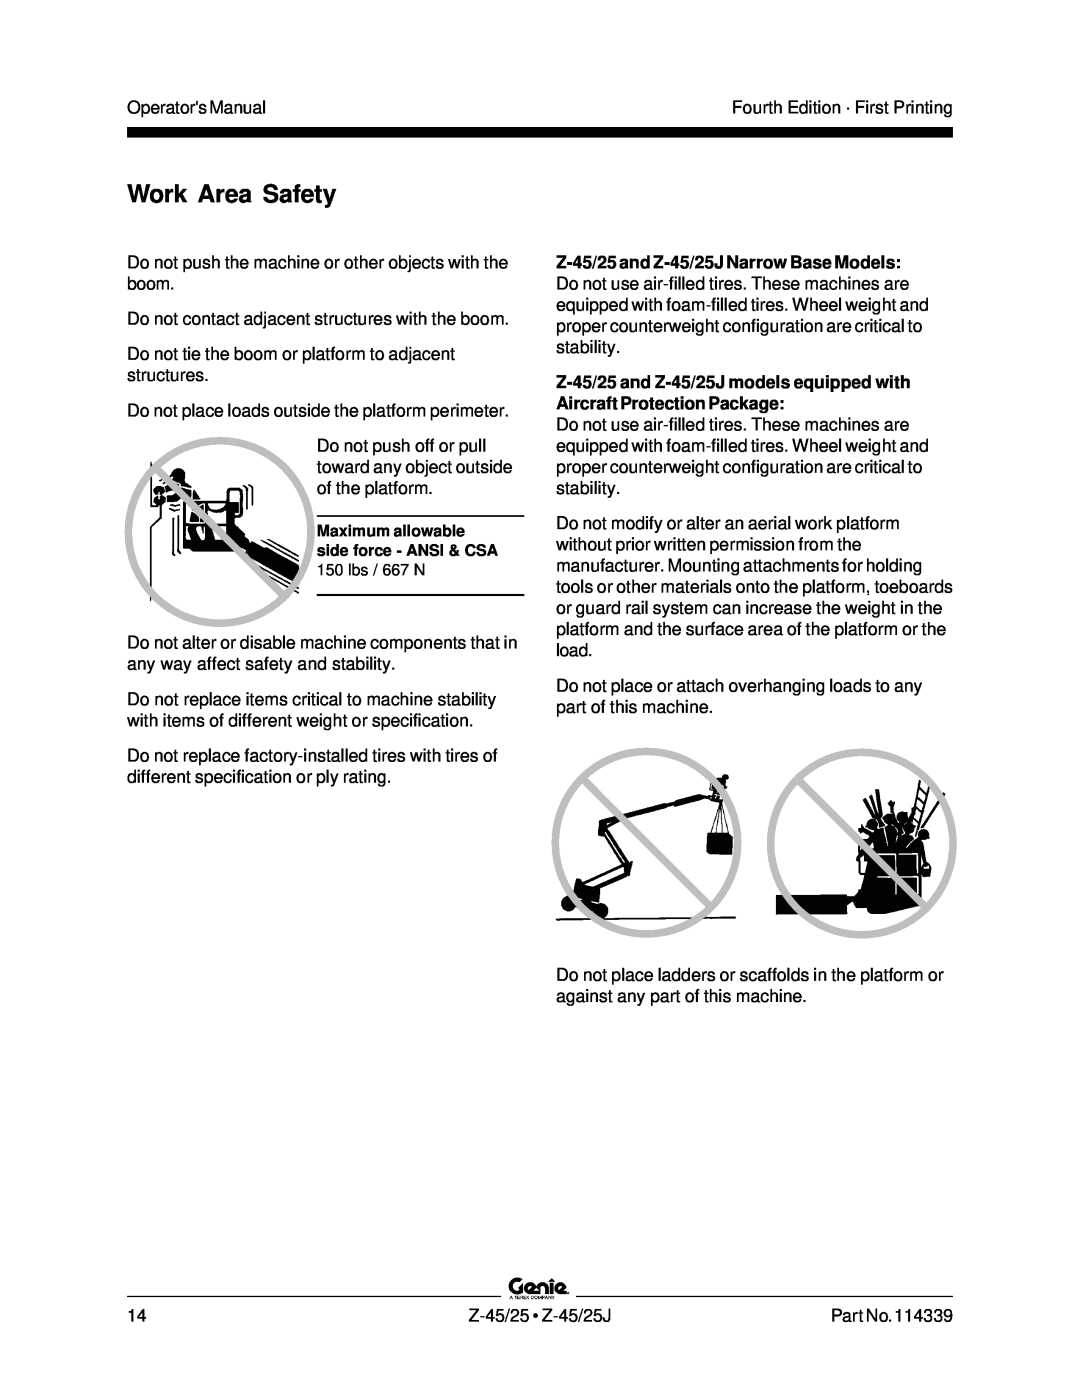 Genie Z-45, Z-25J manual Work Area Safety, Operators Manual 